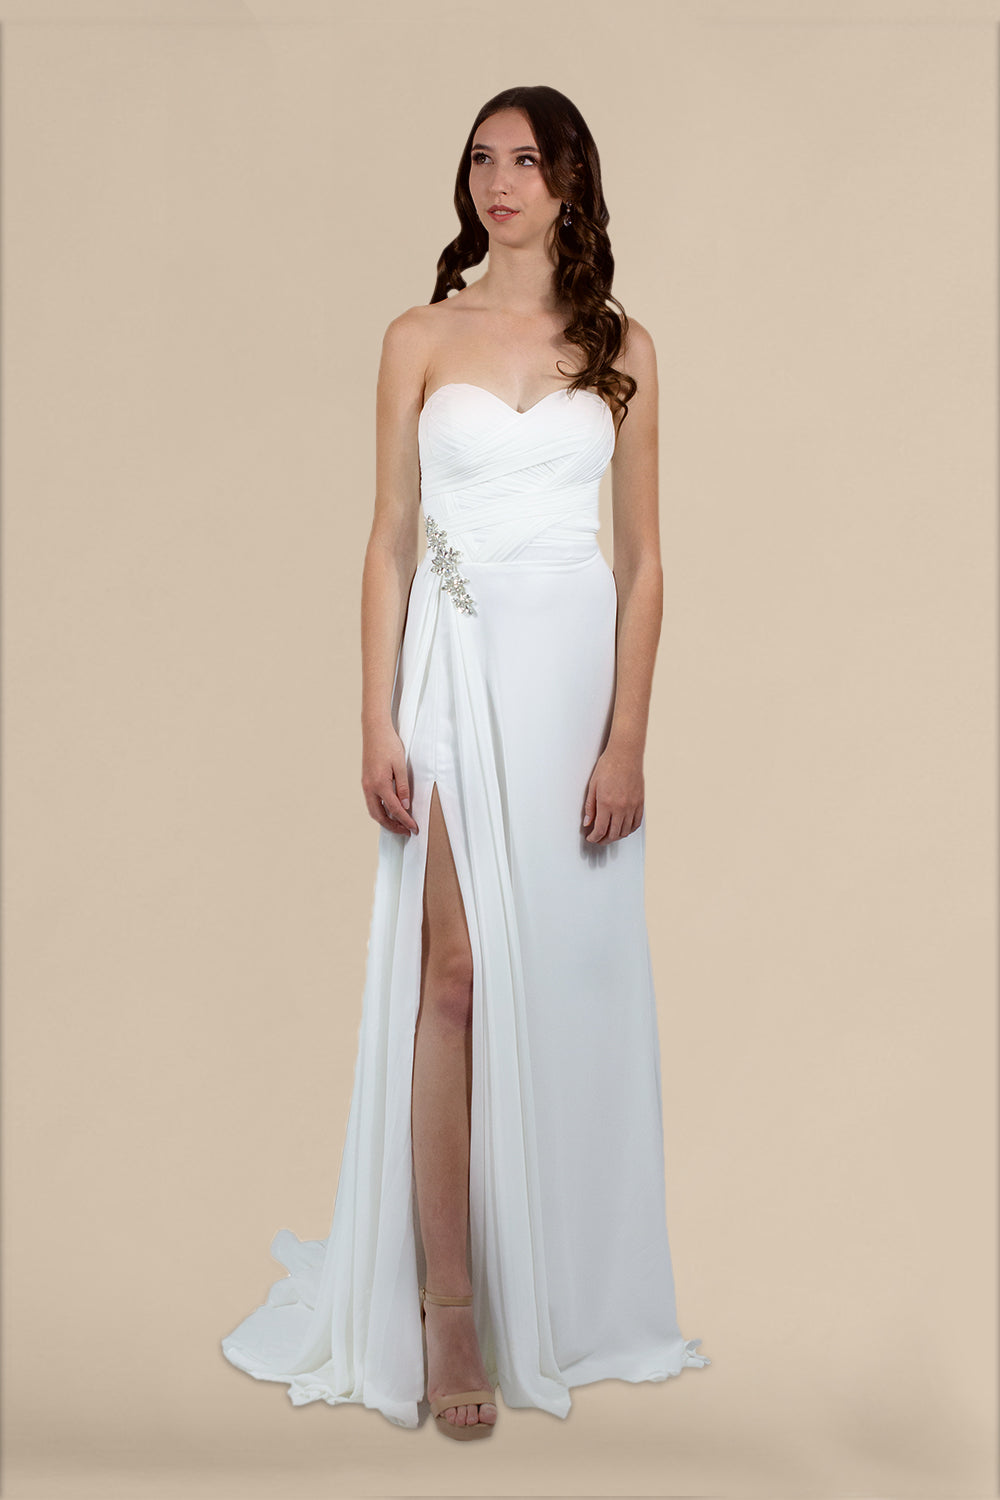 custom made simple chiffon wedding dresses perth australia online envious bridal & formal